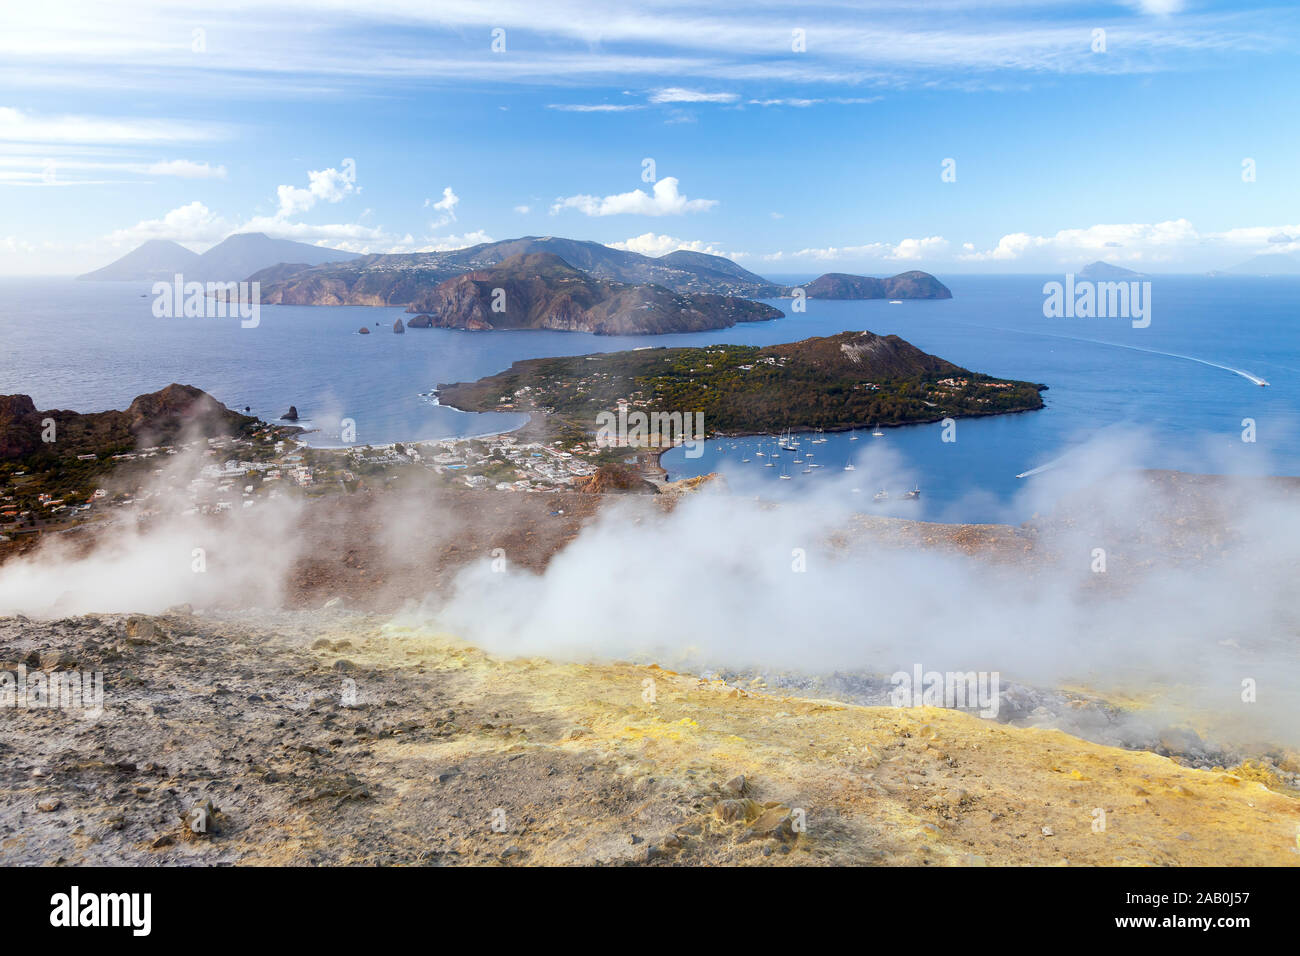 Ein aktiver Vulkan auf den Laparischen Inseln in Italien Stock Photo